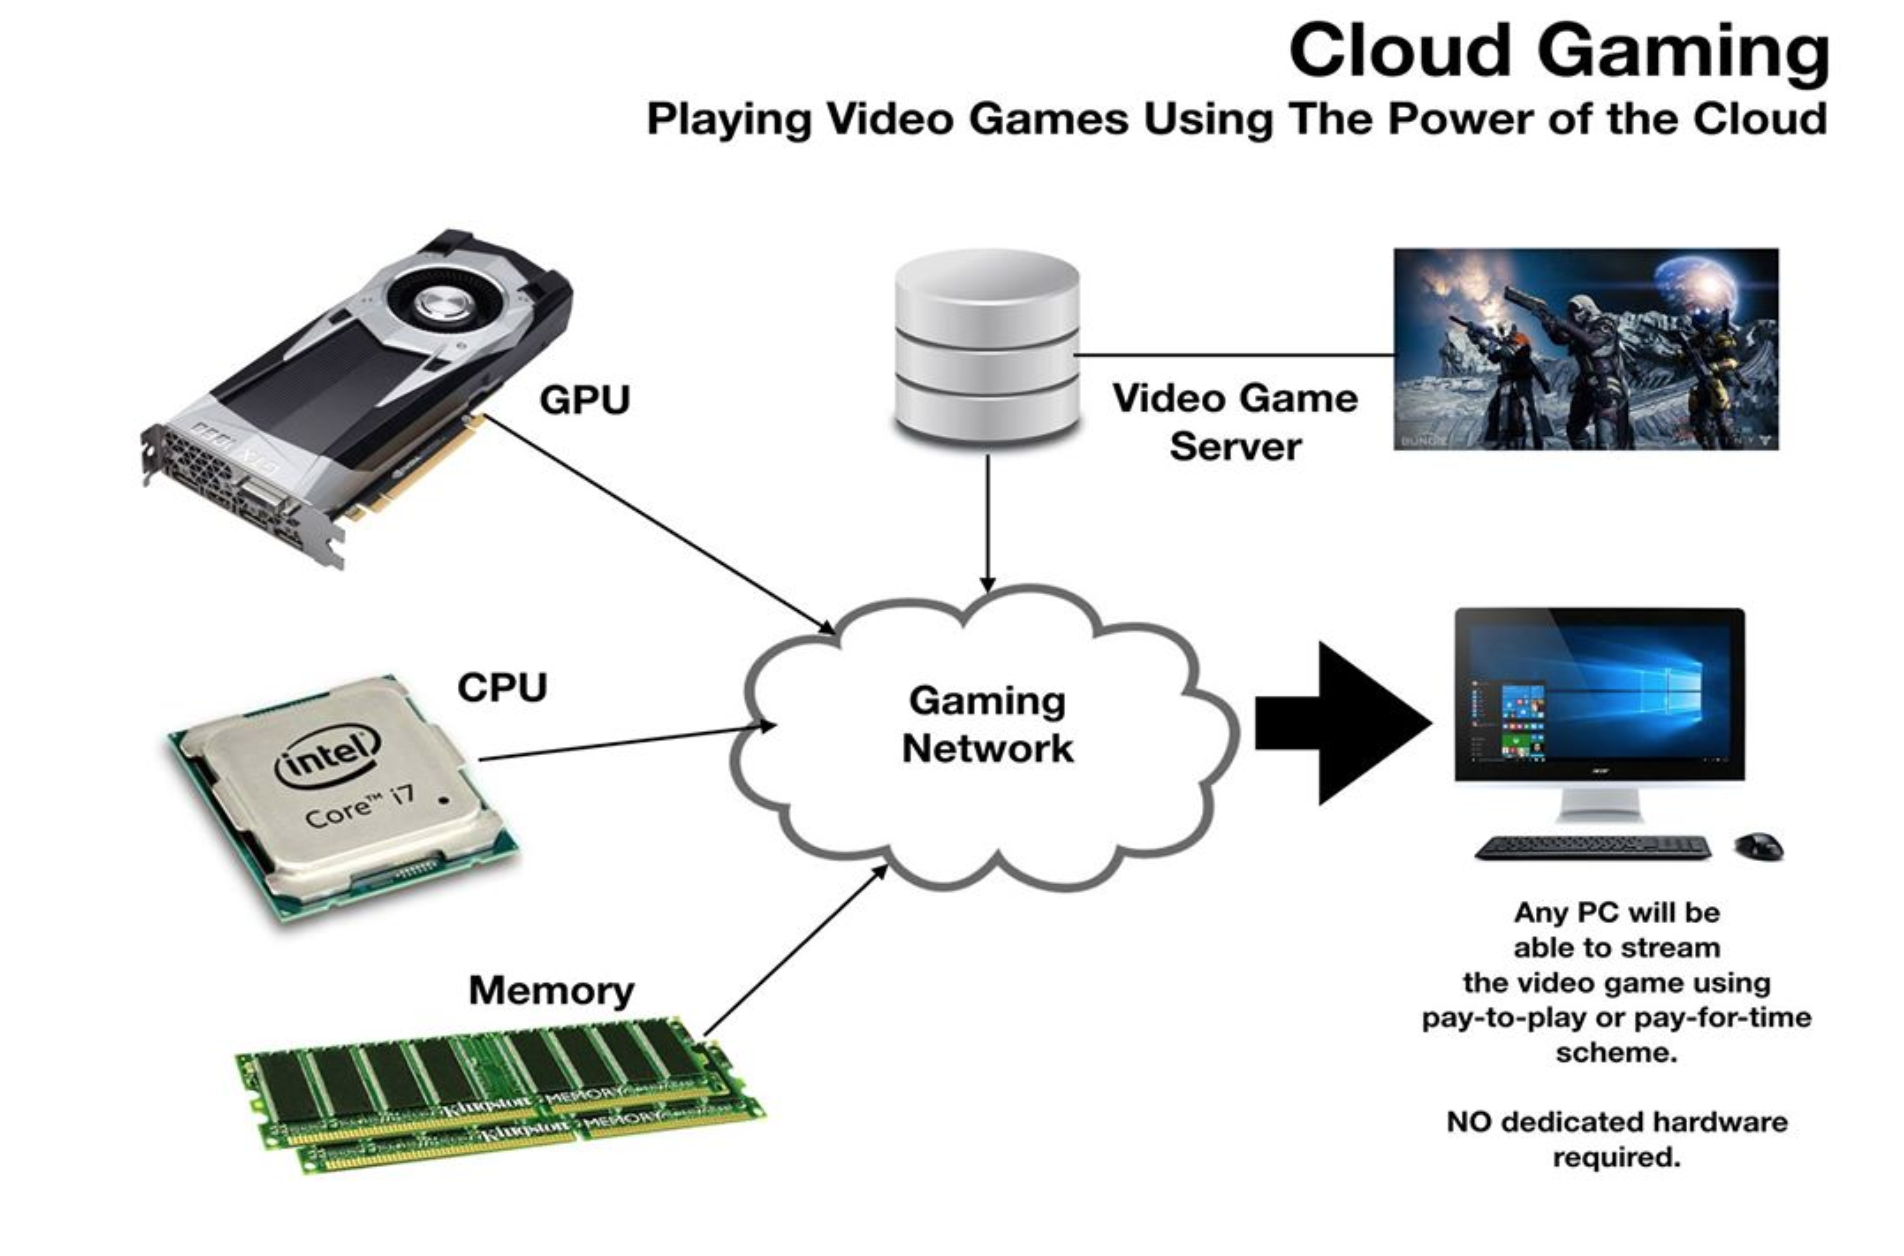 Game server com. Схема работы облачного гейминга. PCLOUD схема. Реклама игрового сервера. Drova облачный гейминг.